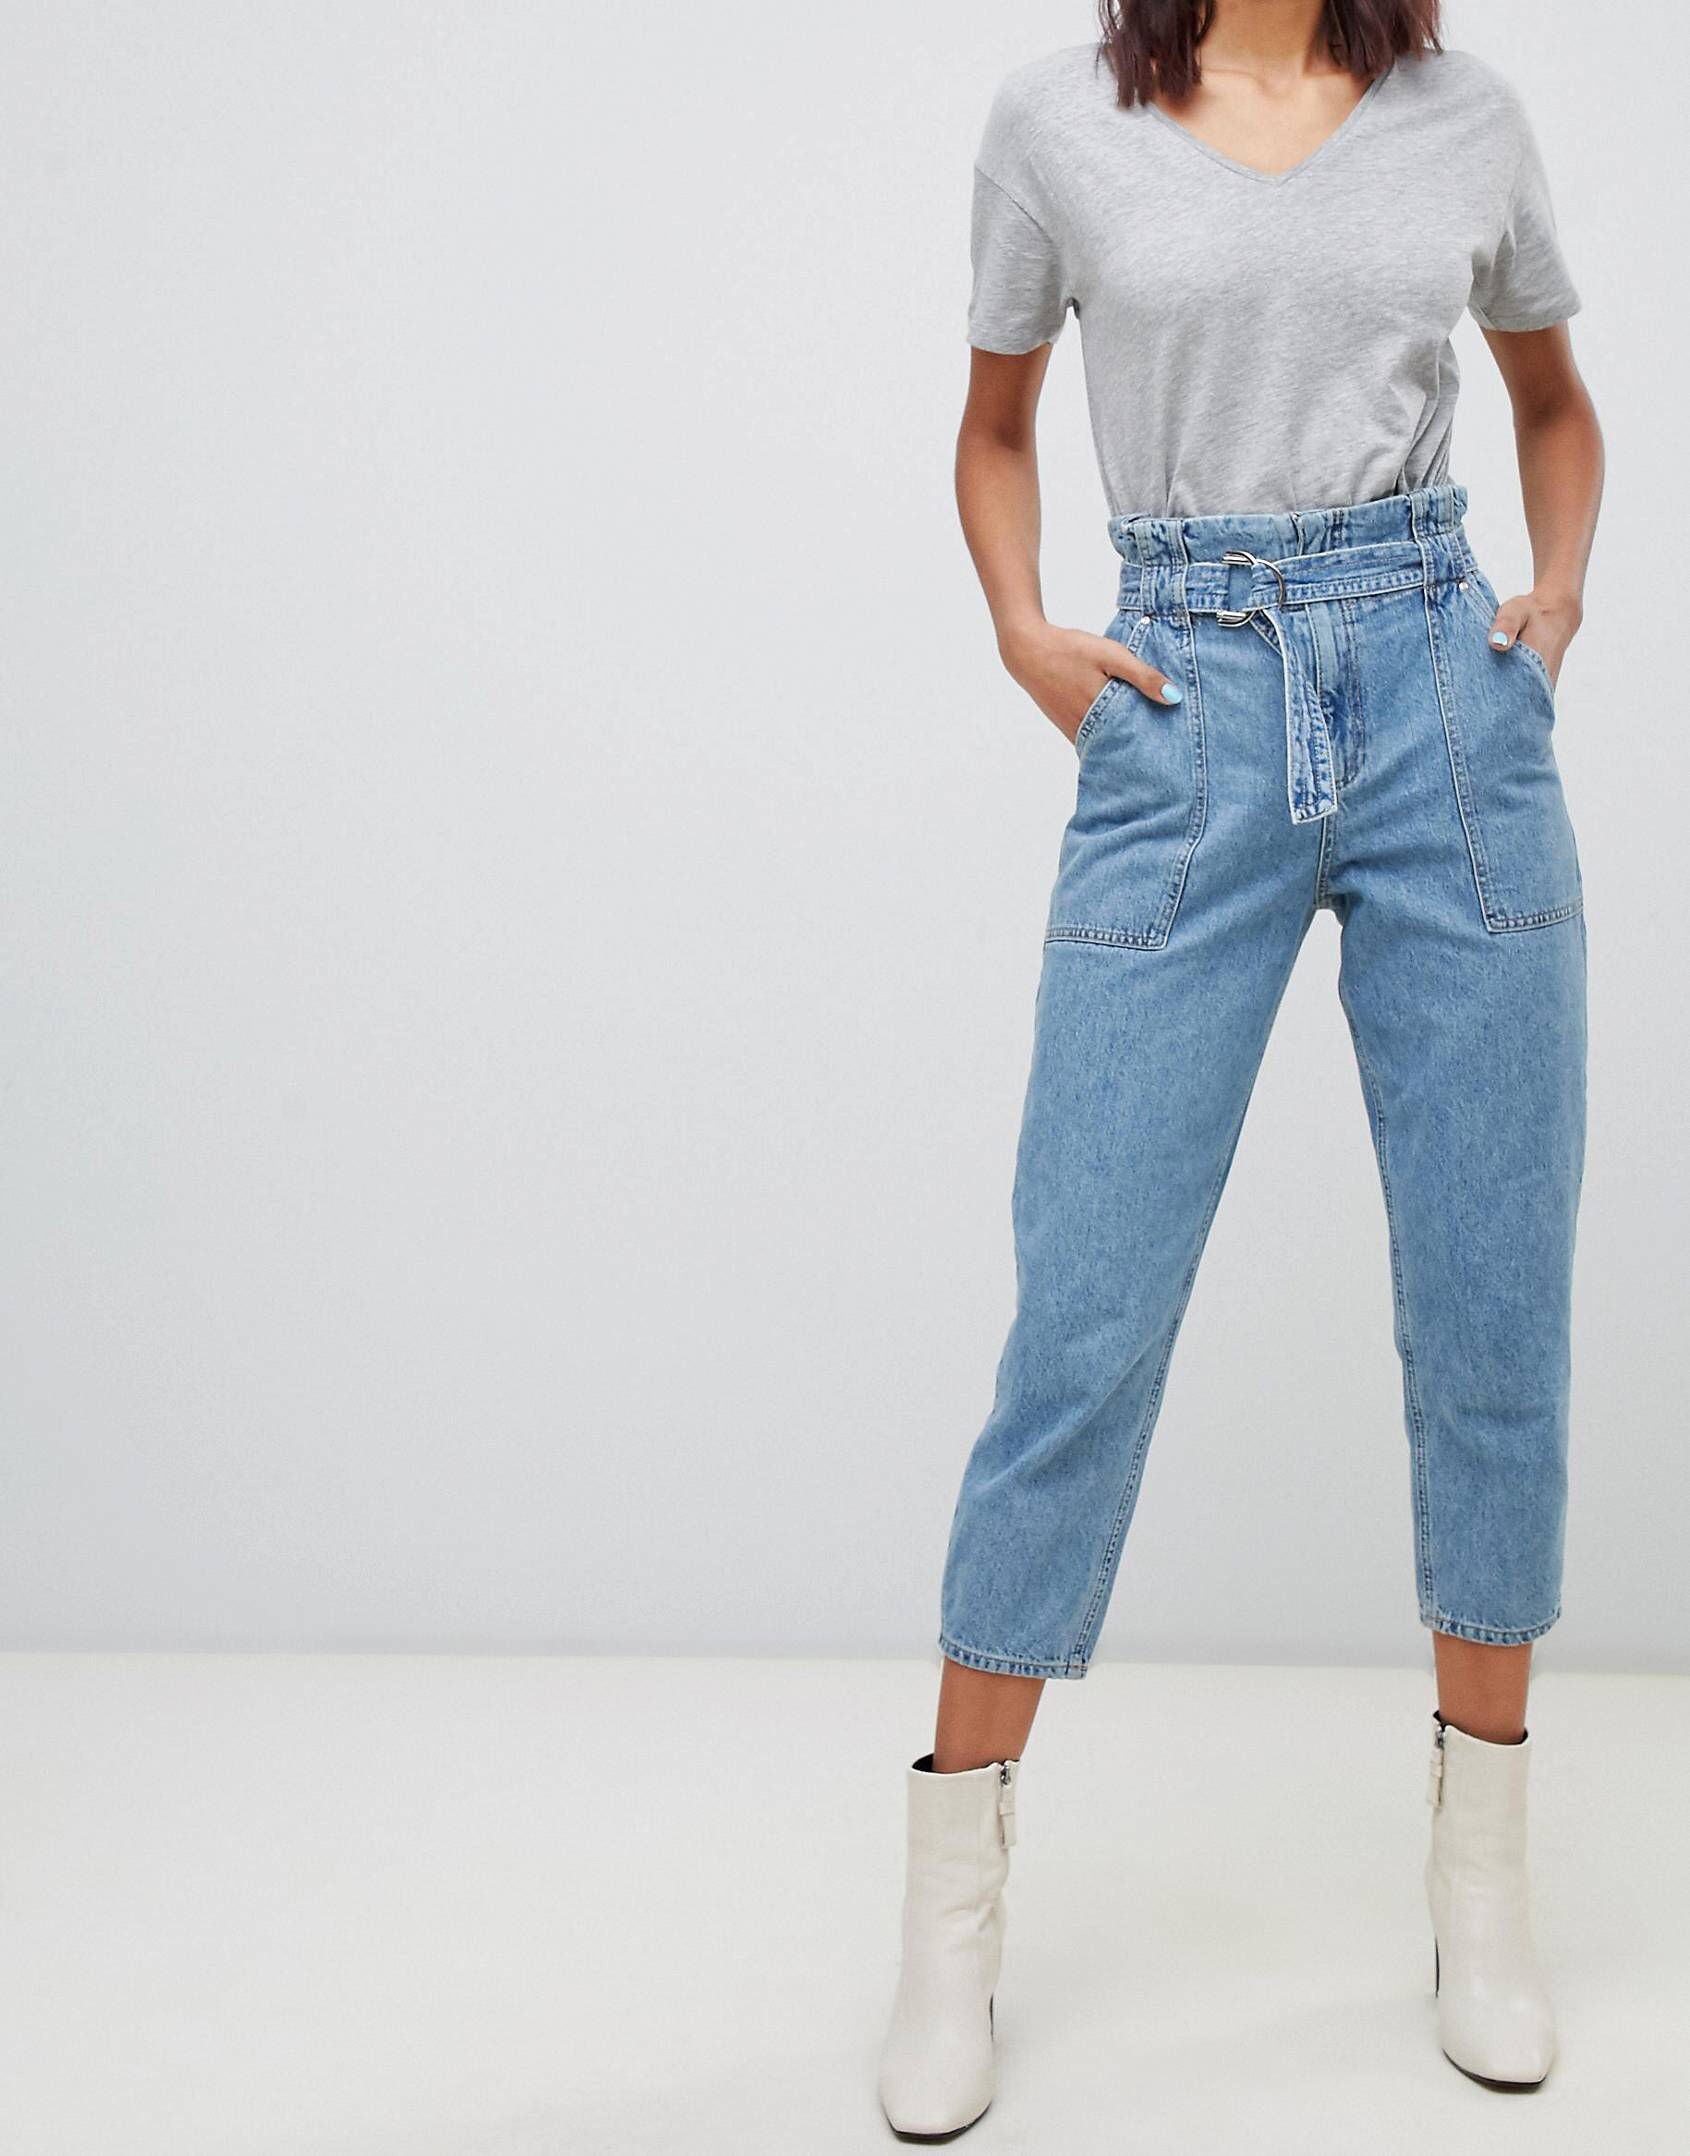 Широкие джинсы на резинке женские. Джинсы Vintage Fit High Waist Denim. Левайс джинсы женские мом. Джинсы мом Гант. Марелла джинсы мом.